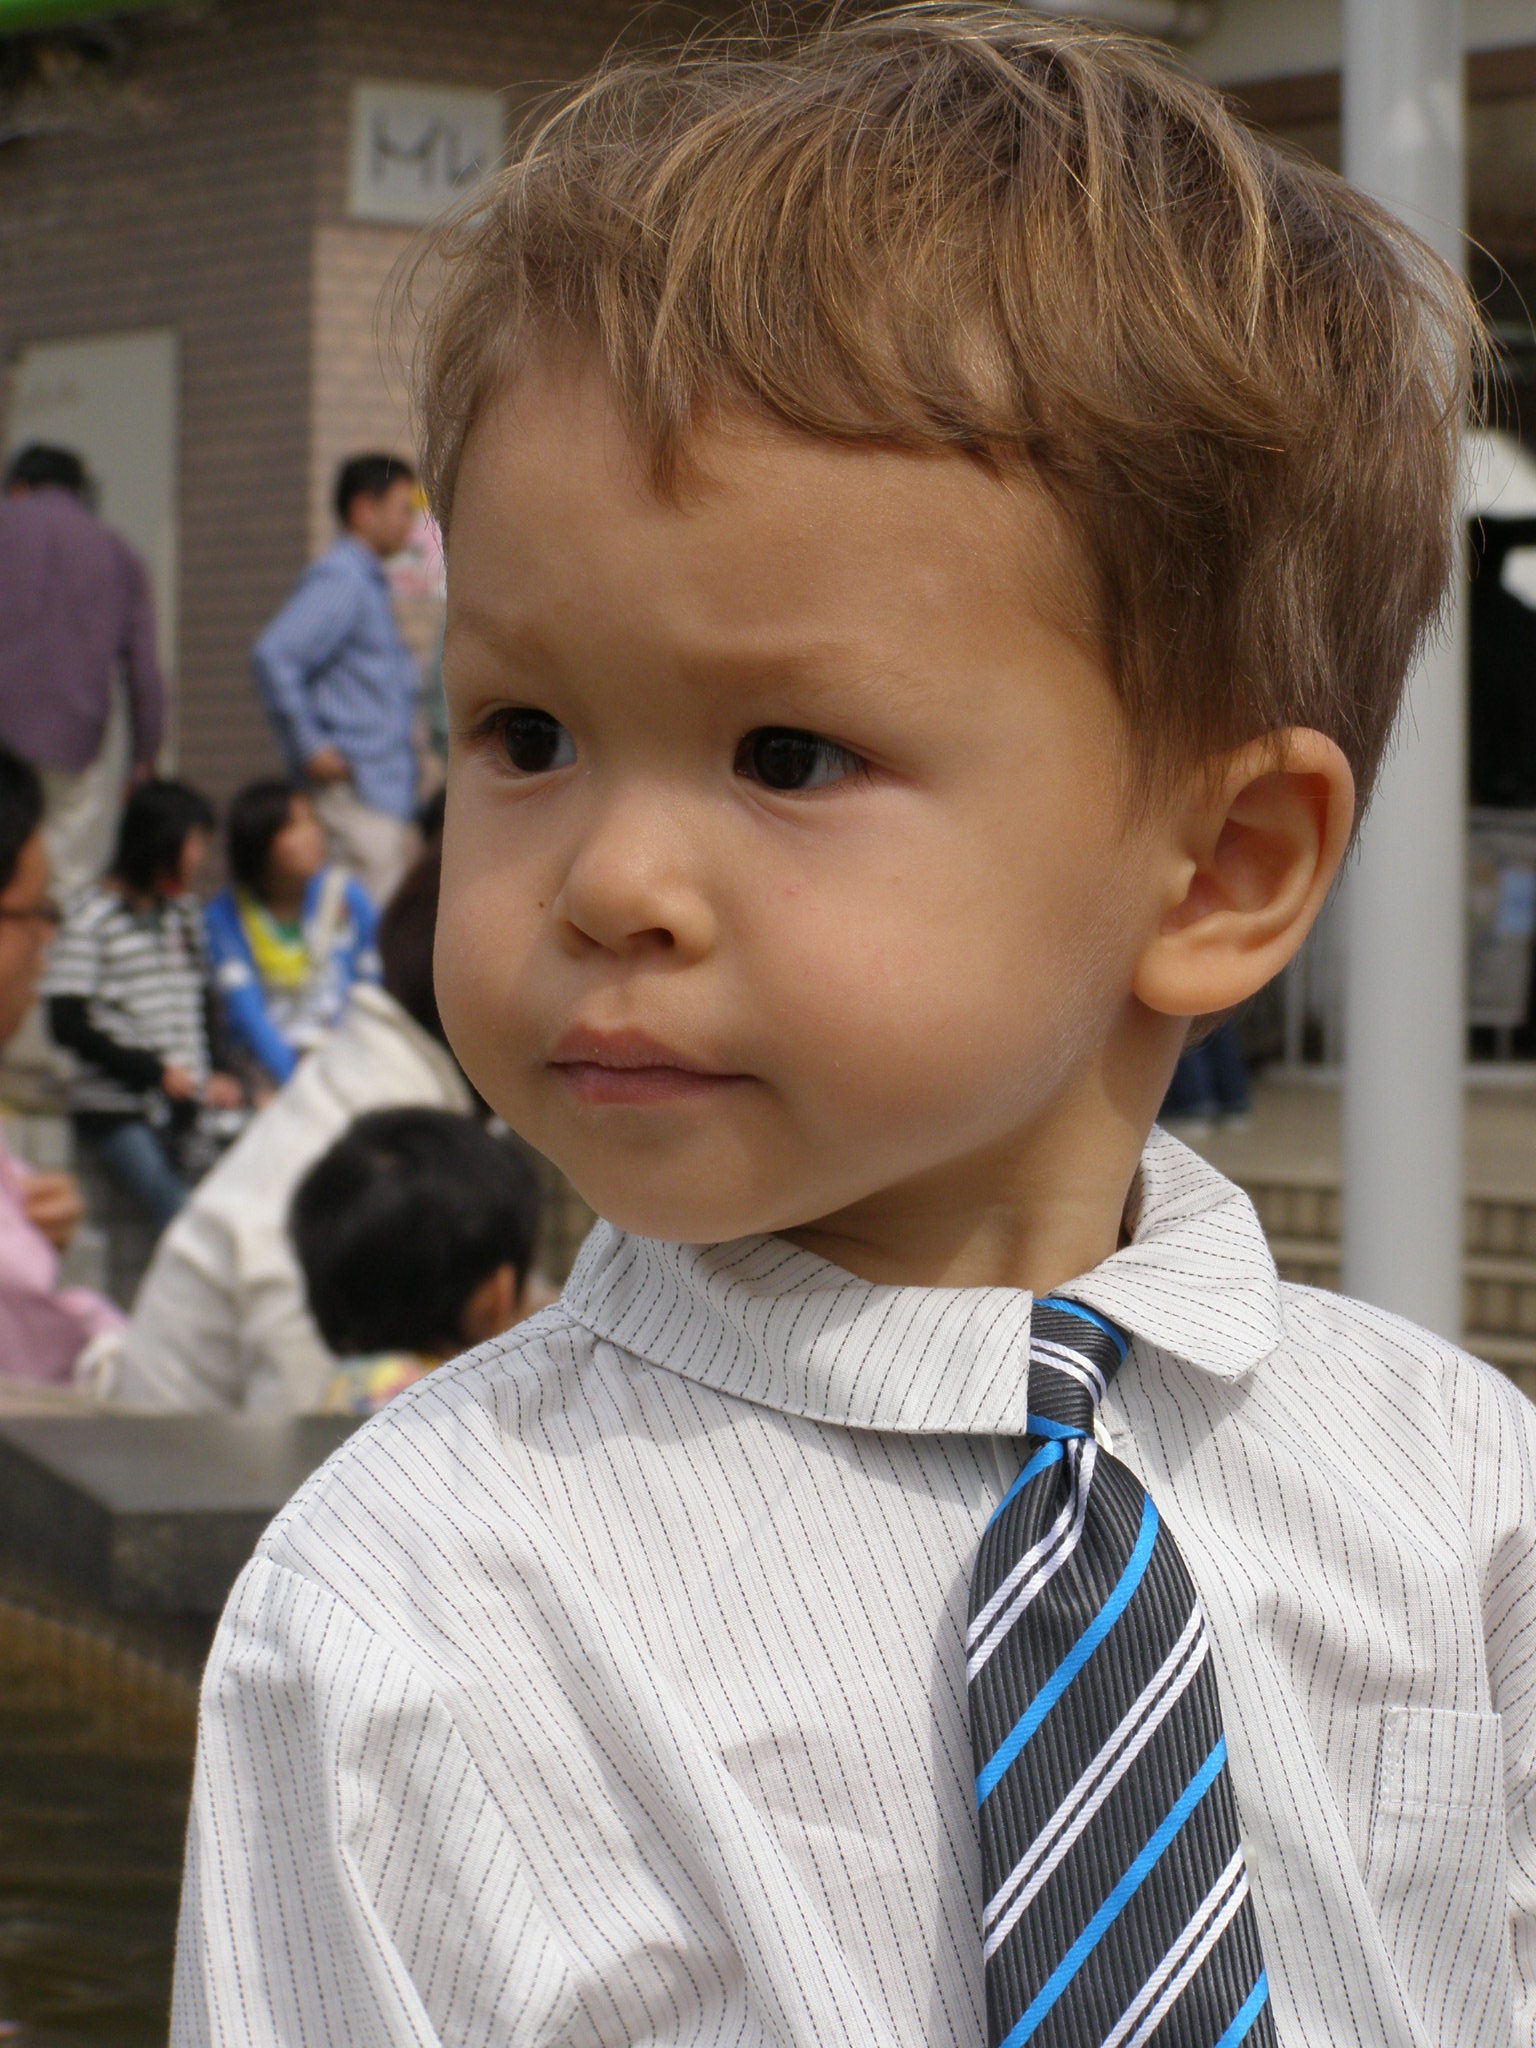 これまでで最高のハーフ 子供 日本人顔 かわいい子供たちの画像